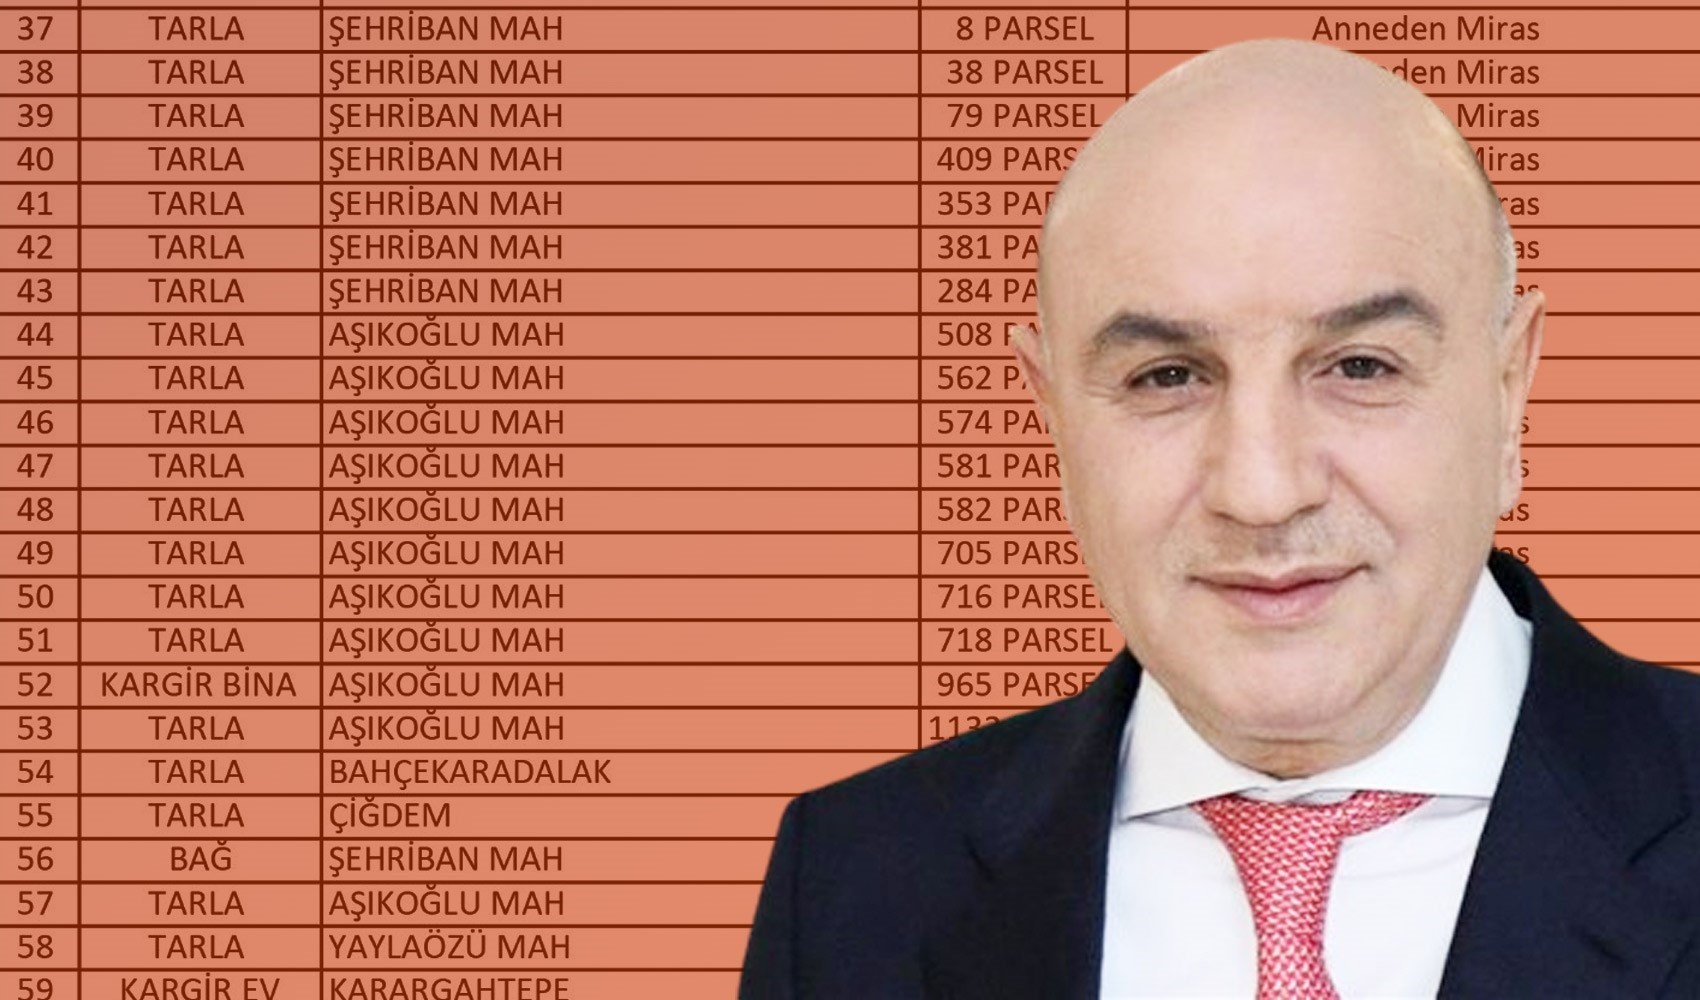 Turgut Altınok mal beyanında bulundu, Murat Ağırel eksikleri sıraladı. 'Bir şey dikkatimi çekti'